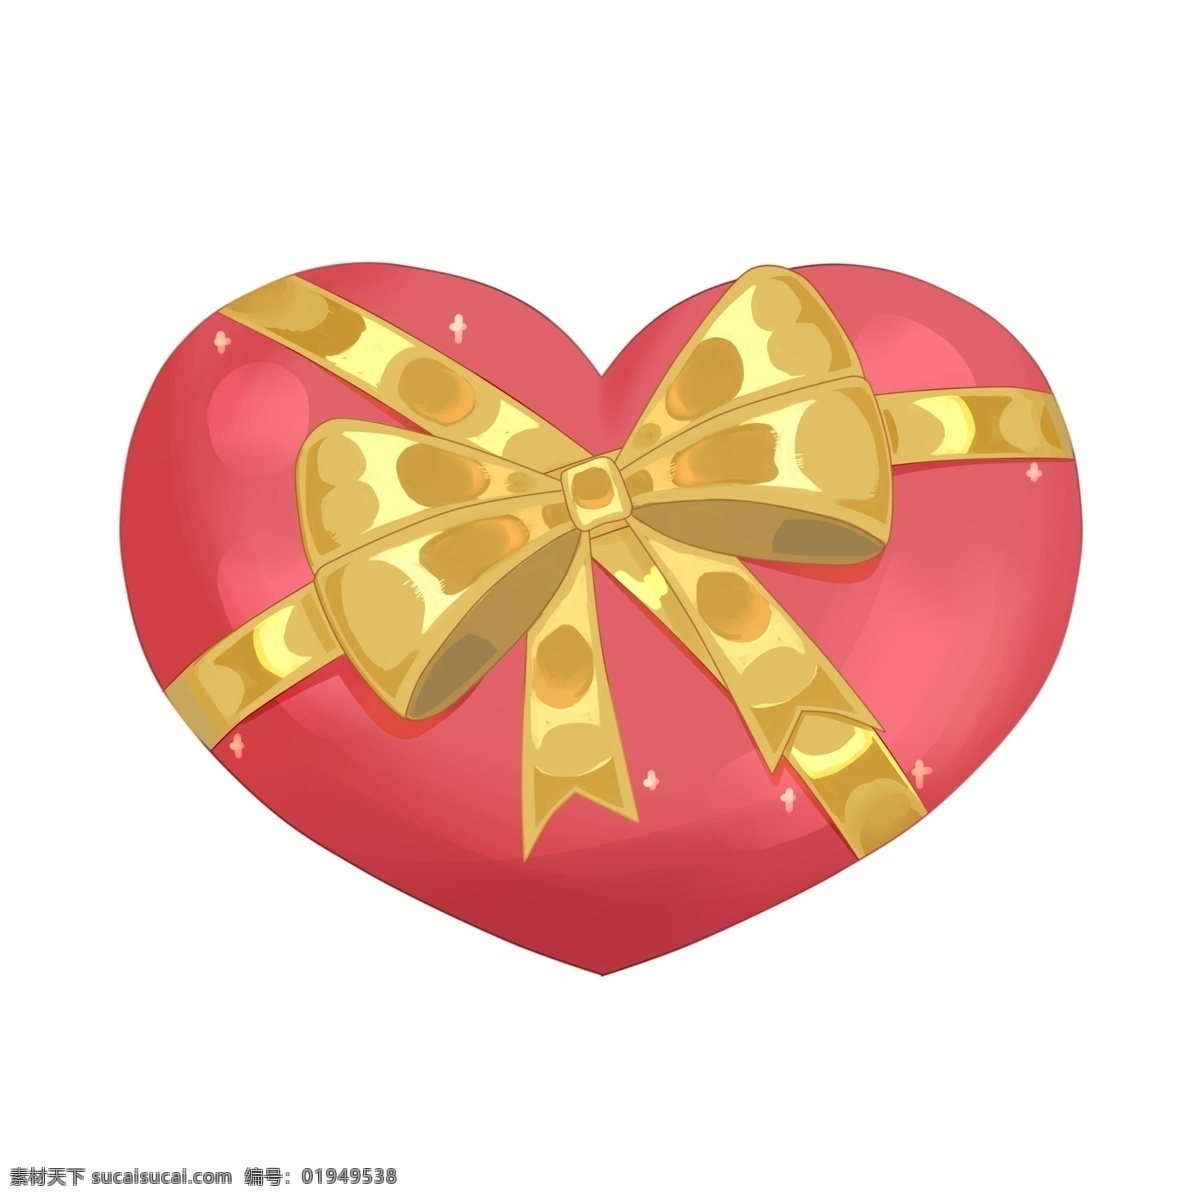 红色 心形 礼物 盒 插画 卡通插画 爱心礼物 红色爱心 爱心 装饰爱心 爱的插画 红心礼物